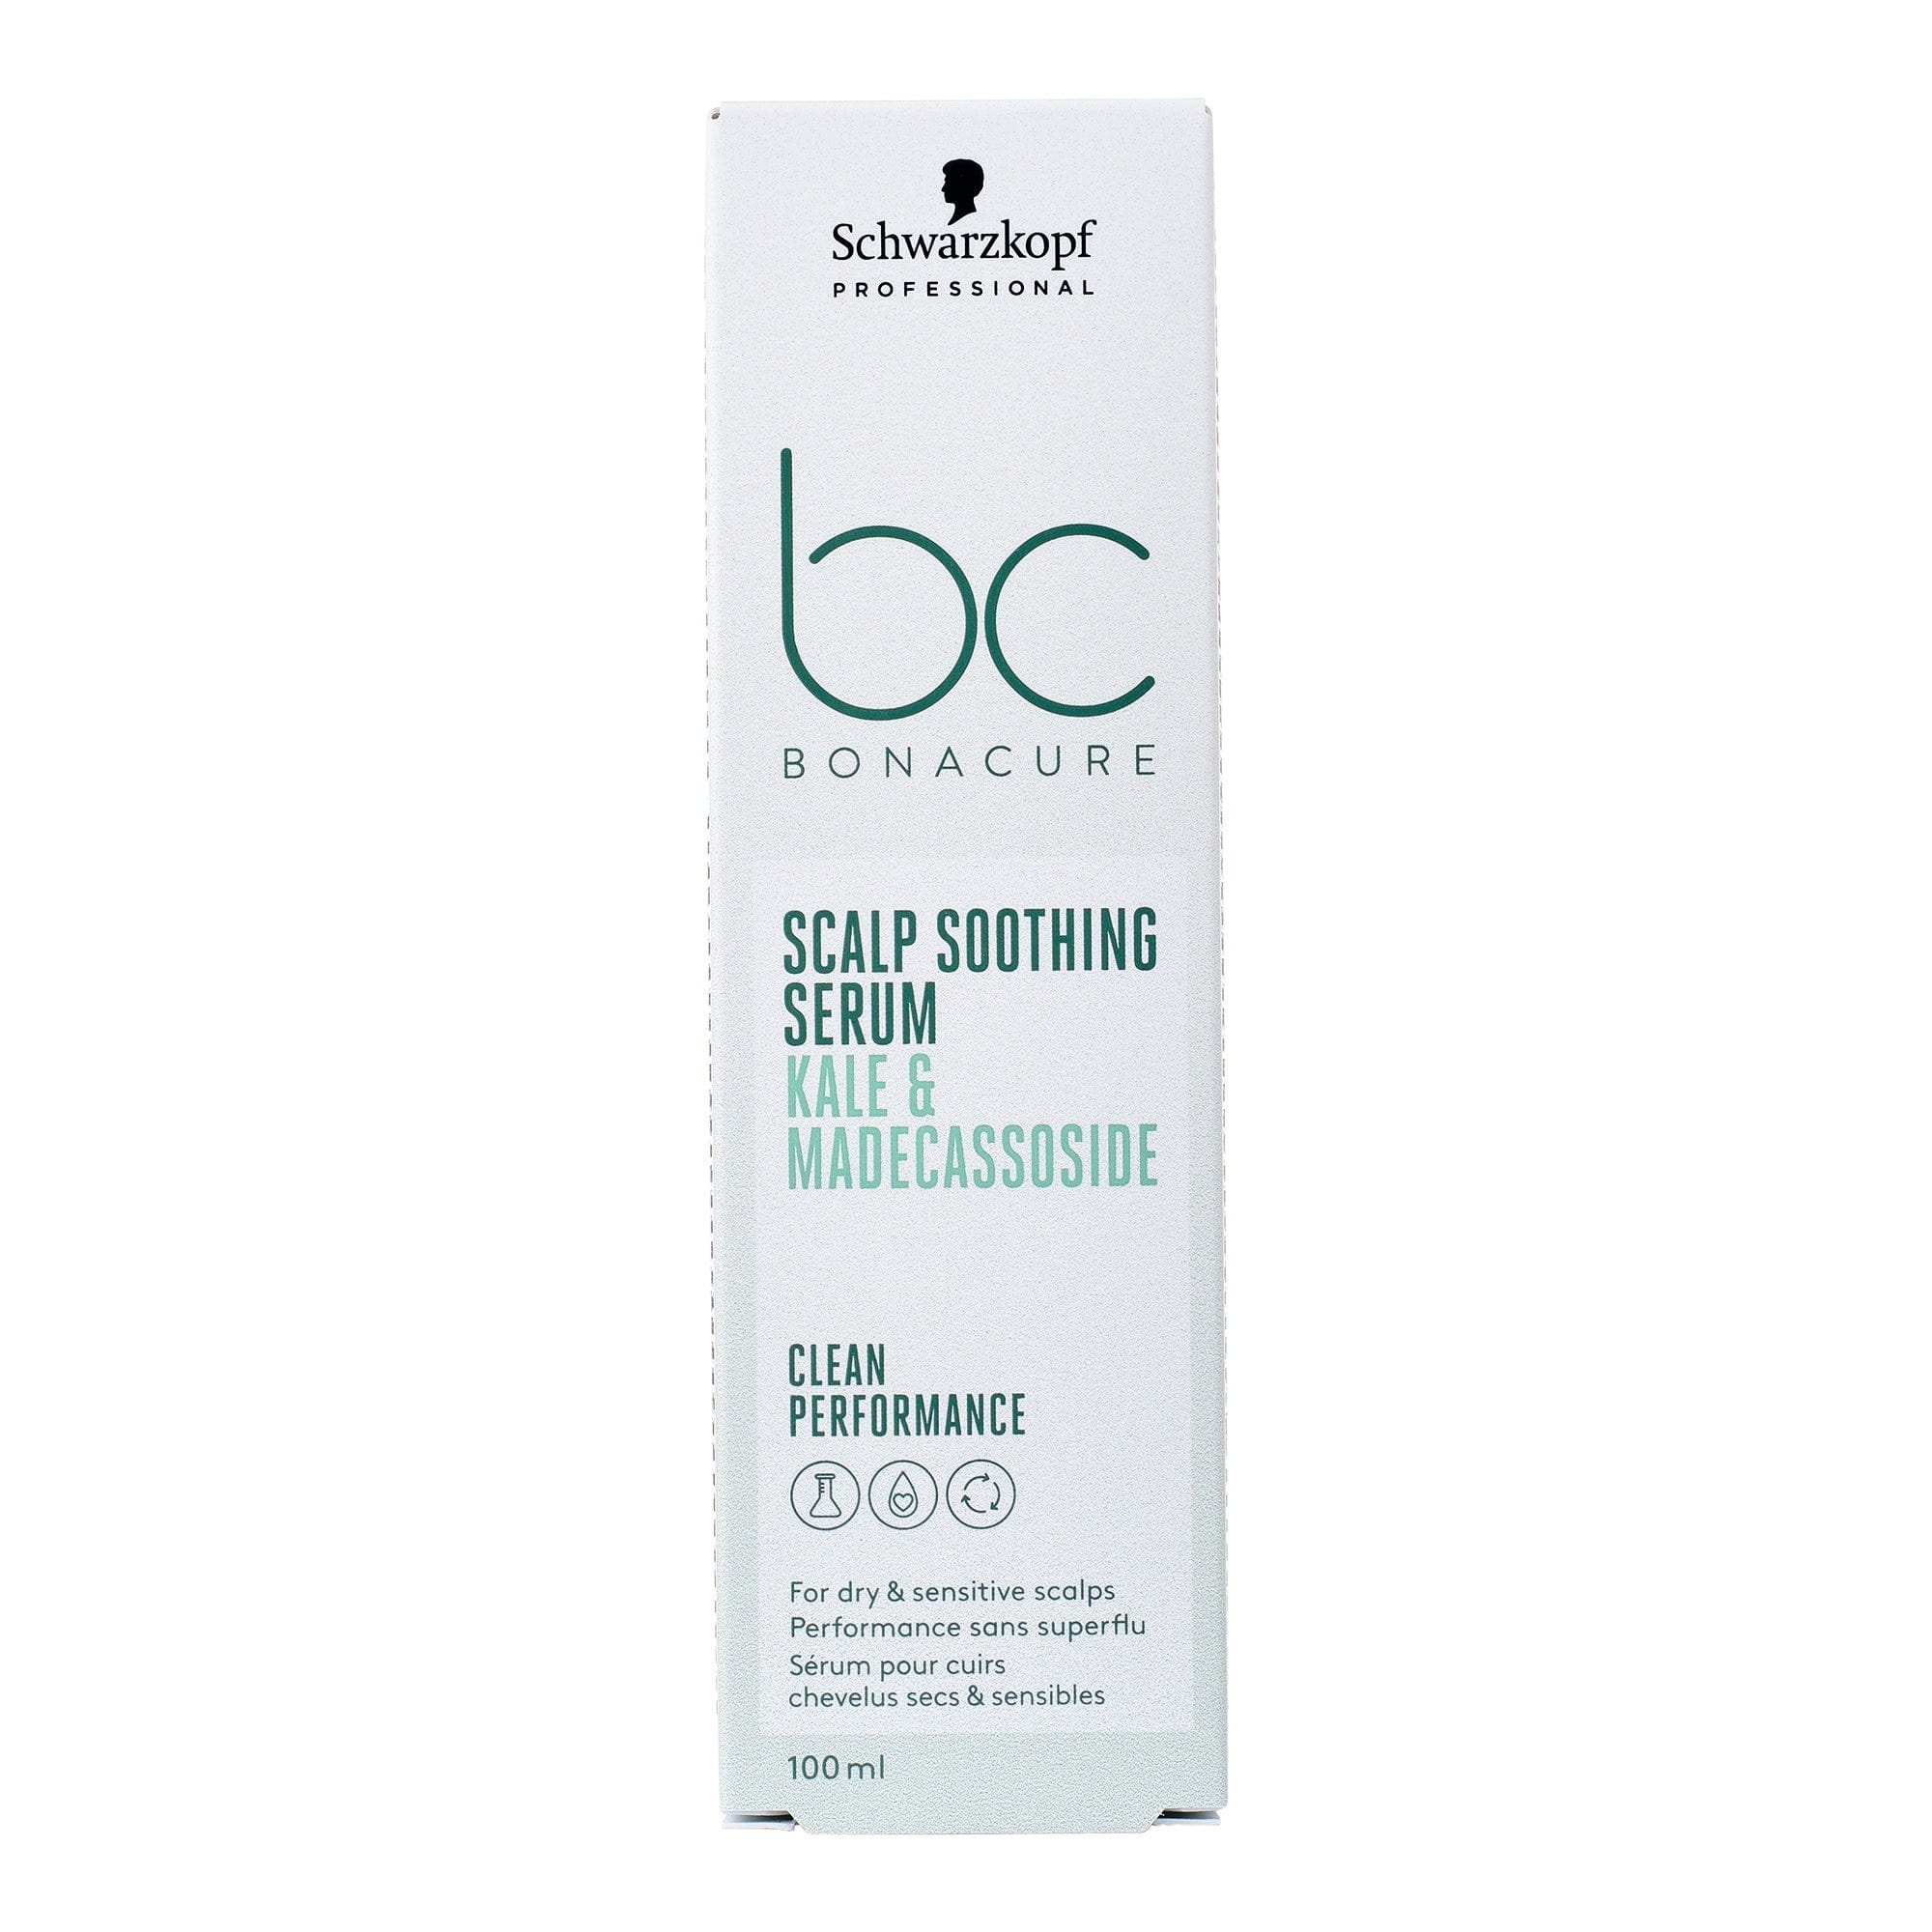 BC Bonacure Tratamiento Bonacure Scalp Genesis Sérum Calmante 100ml Roberta Beauty Club Tienda Online Productos de Peluqueria